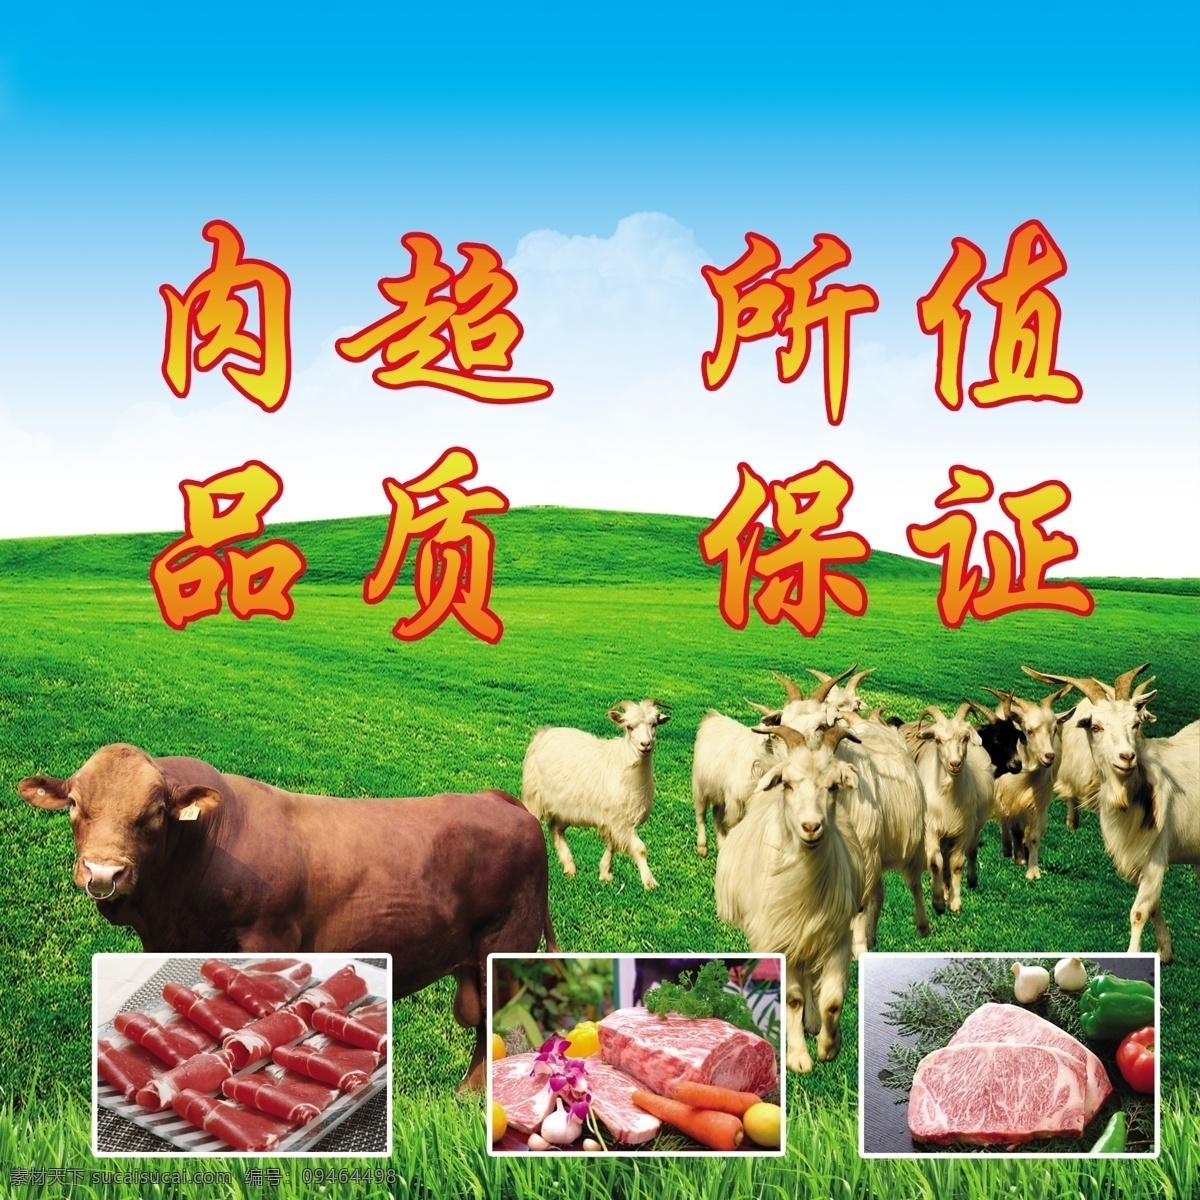 牛羊肉 牛肉 羊肉 车体广告 冷藏 冷冻 广告牌 生活百科 餐饮美食